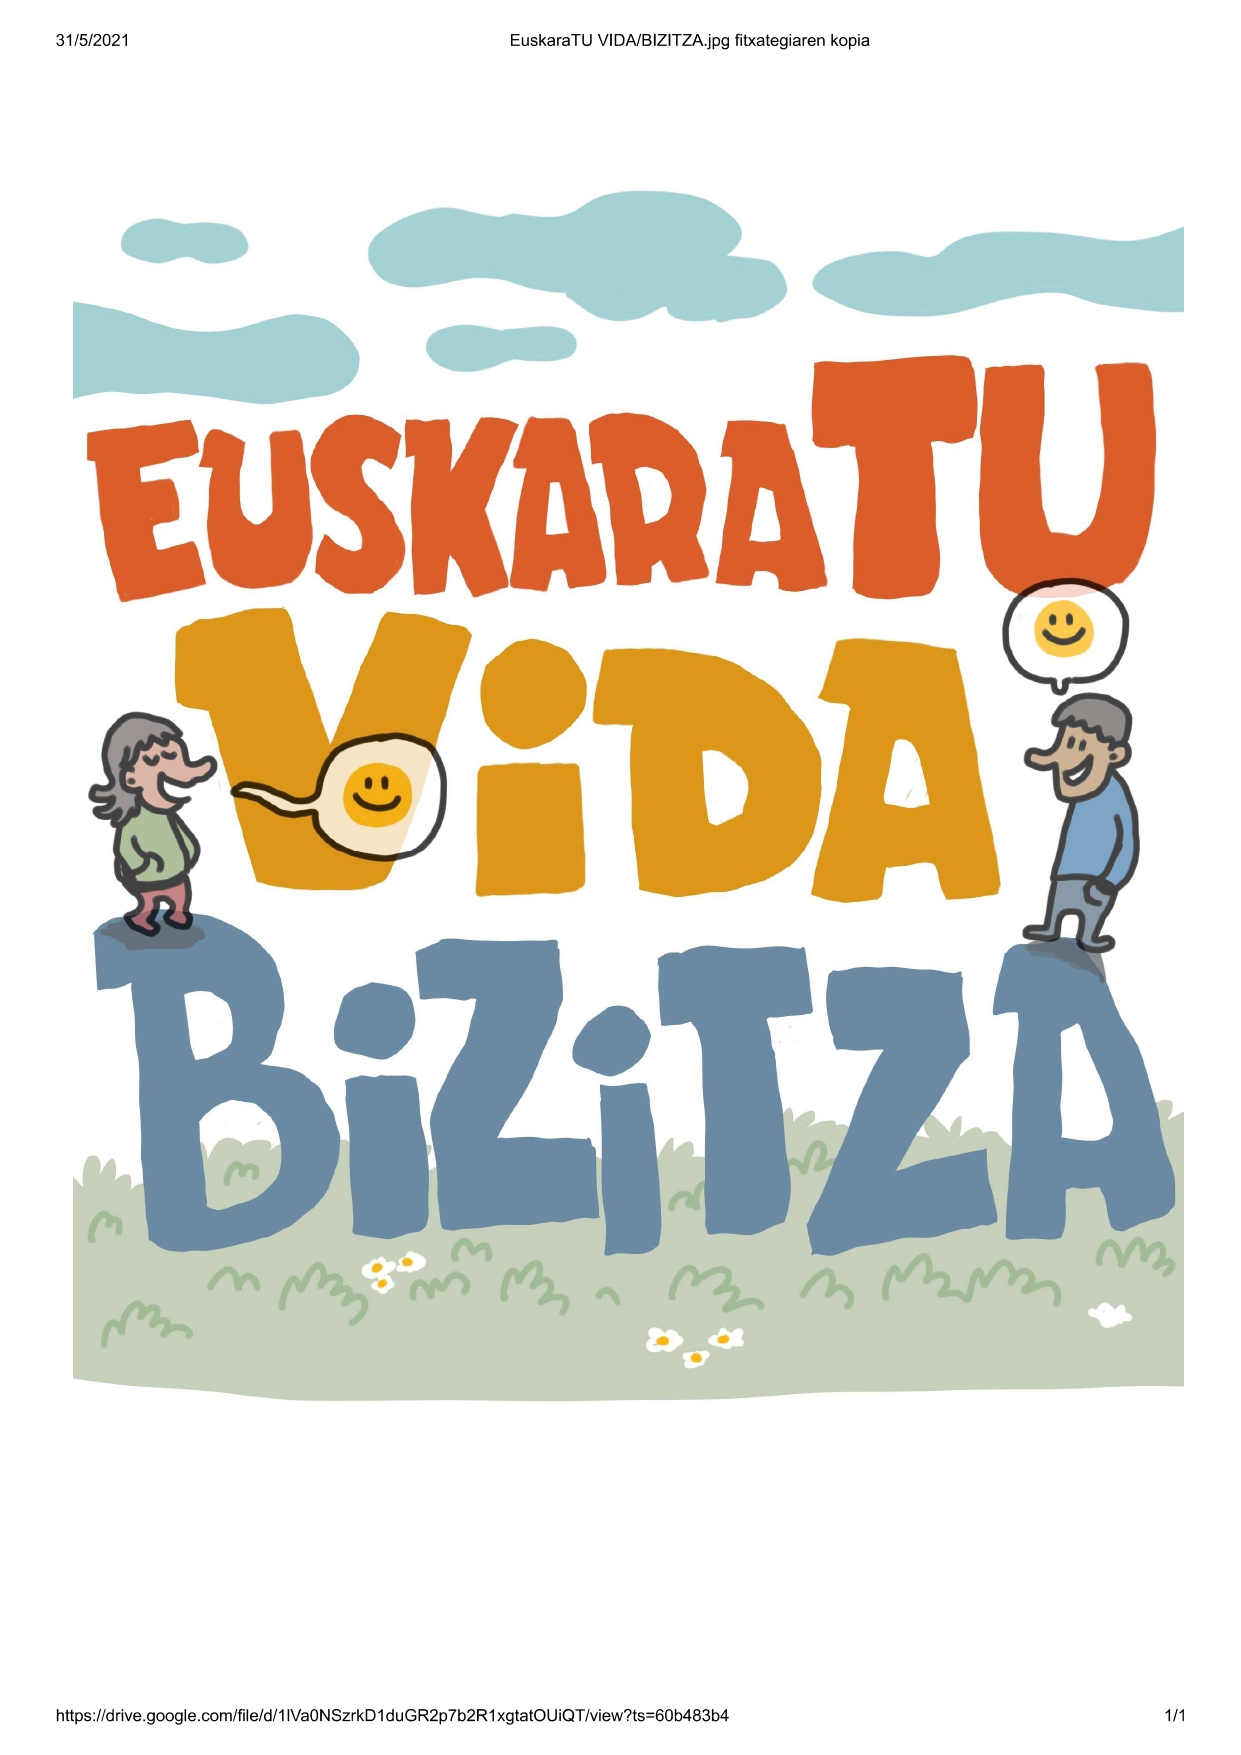 Zubiarte abre el plazo de matrícula de sus cursos de euskera para personas adultas bajo el lema 'EuskaraTU VIDA/BIZITZA'